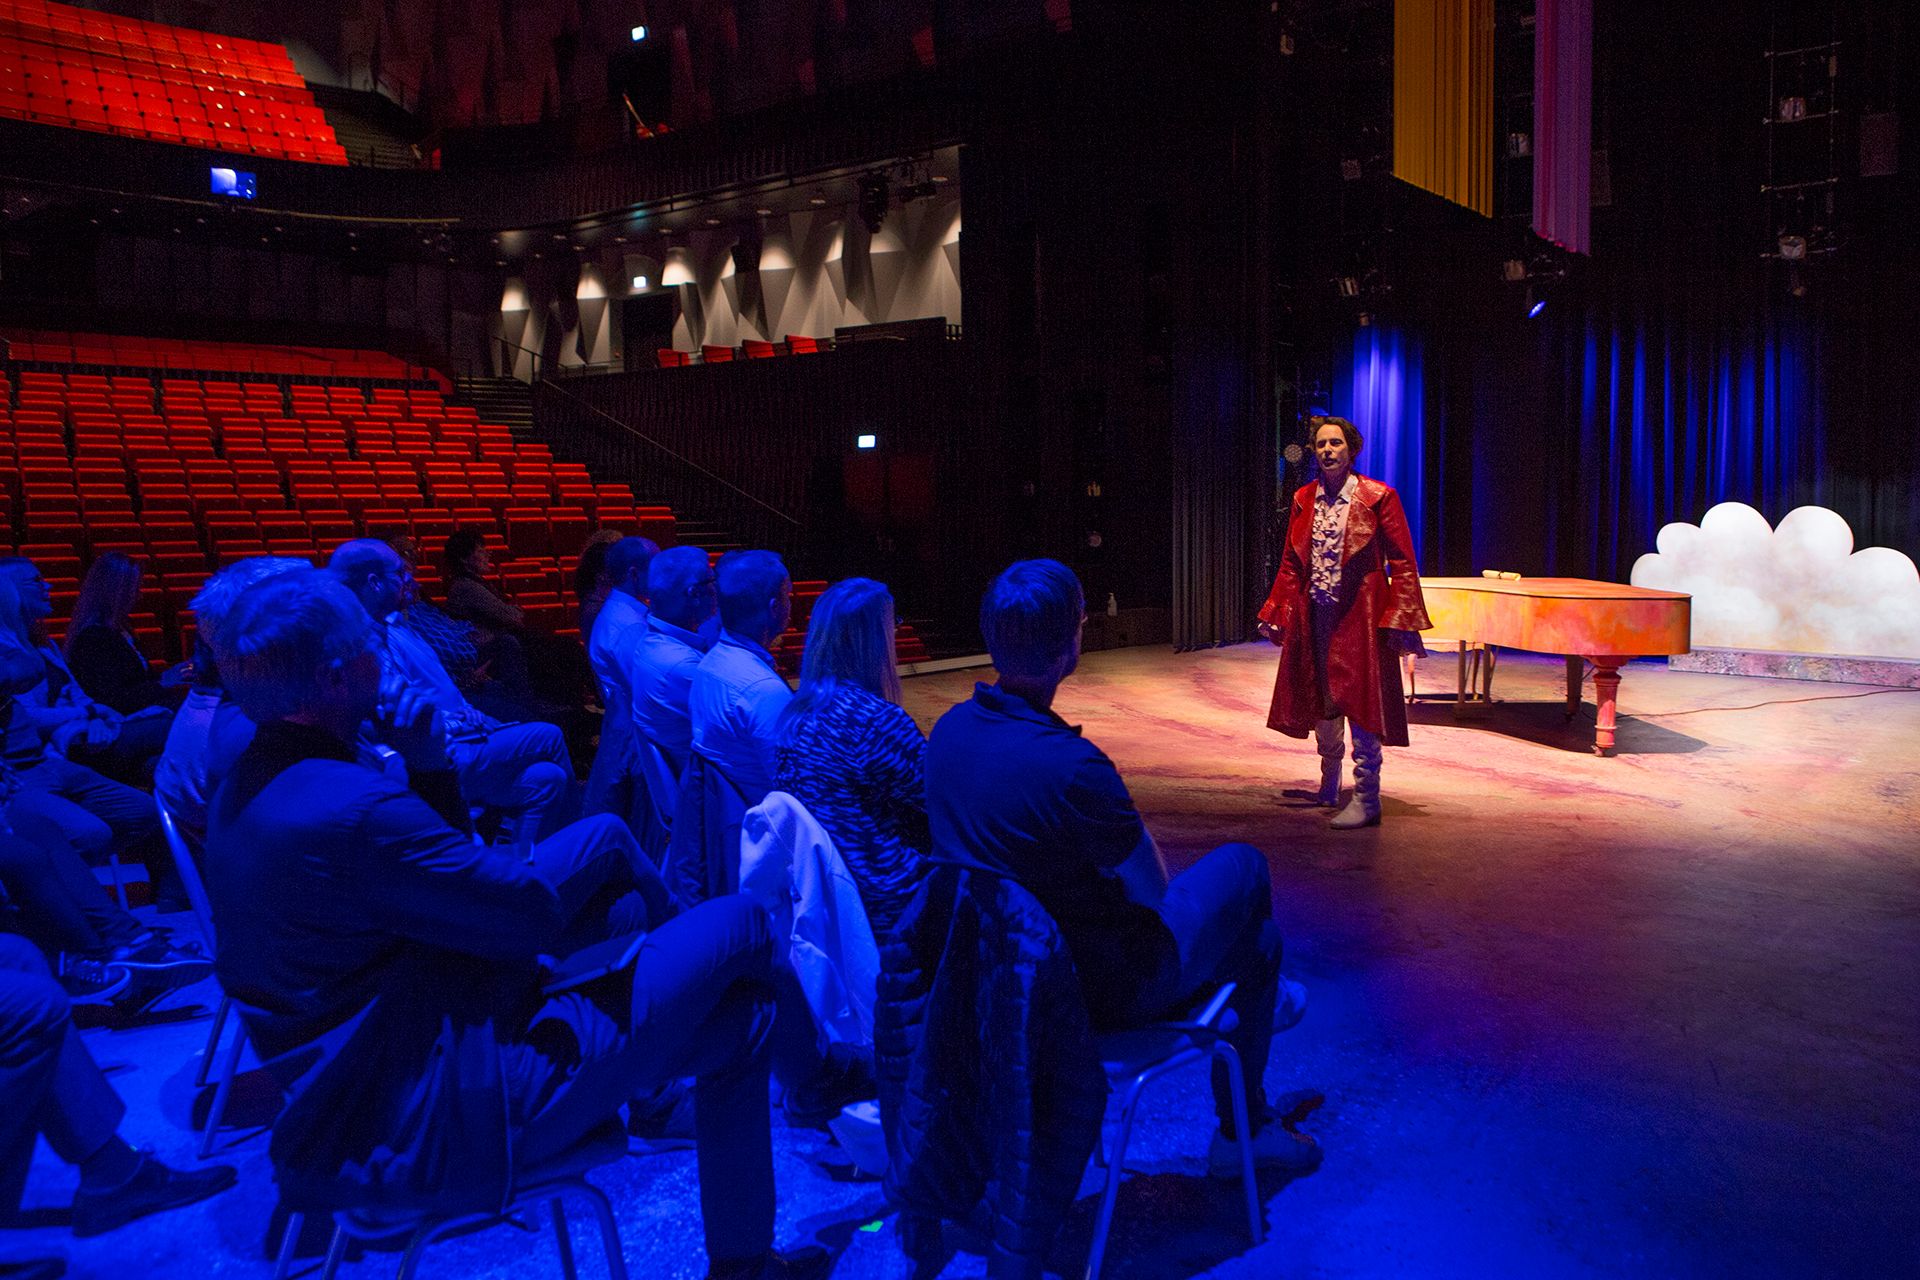 En gruppe mennesker som sitter på stoler på en teaterscenen. En mann i rød frakk står og prater til forsamlingen.